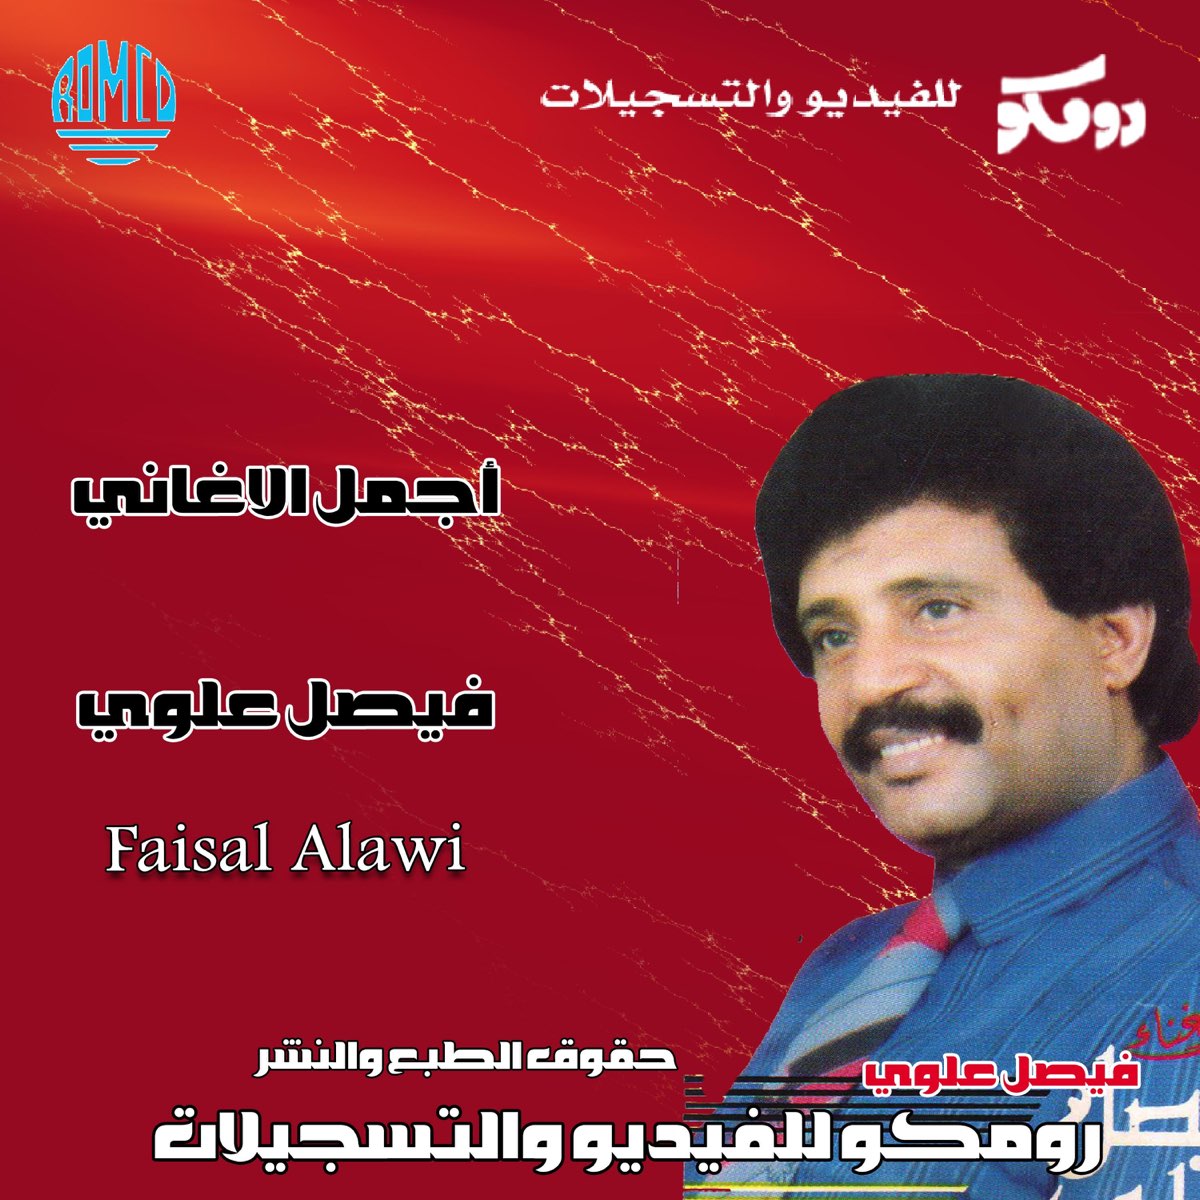 اجمل الأغاني فيصل علوي - Album by Faisel Alawi - Apple Music